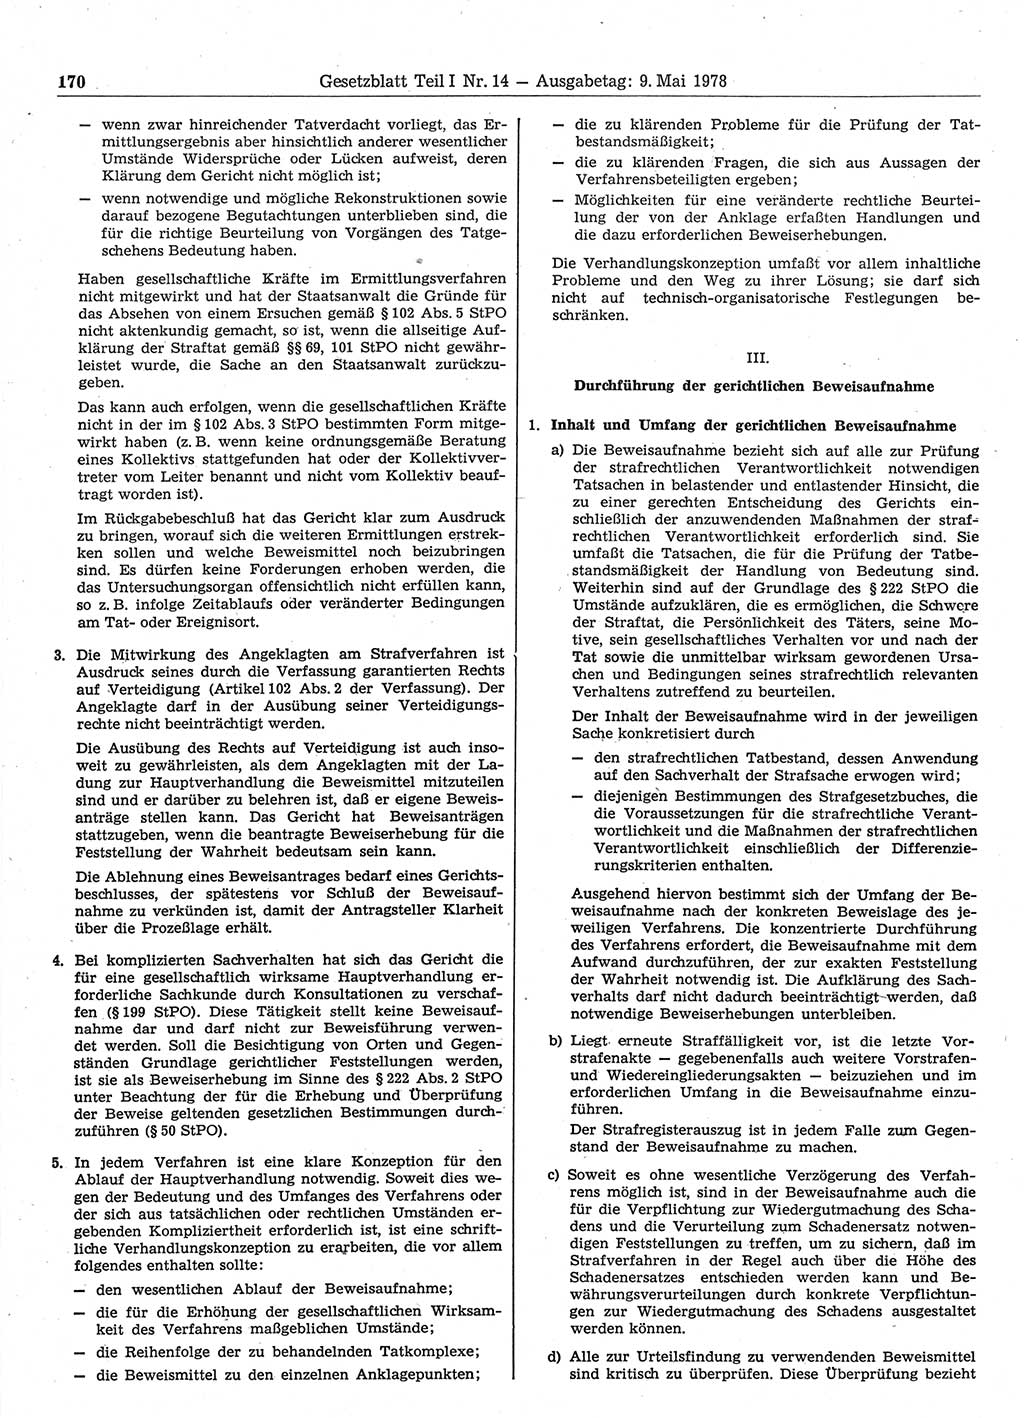 Gesetzblatt (GBl.) der Deutschen Demokratischen Republik (DDR) Teil Ⅰ 1978, Seite 170 (GBl. DDR Ⅰ 1978, S. 170)